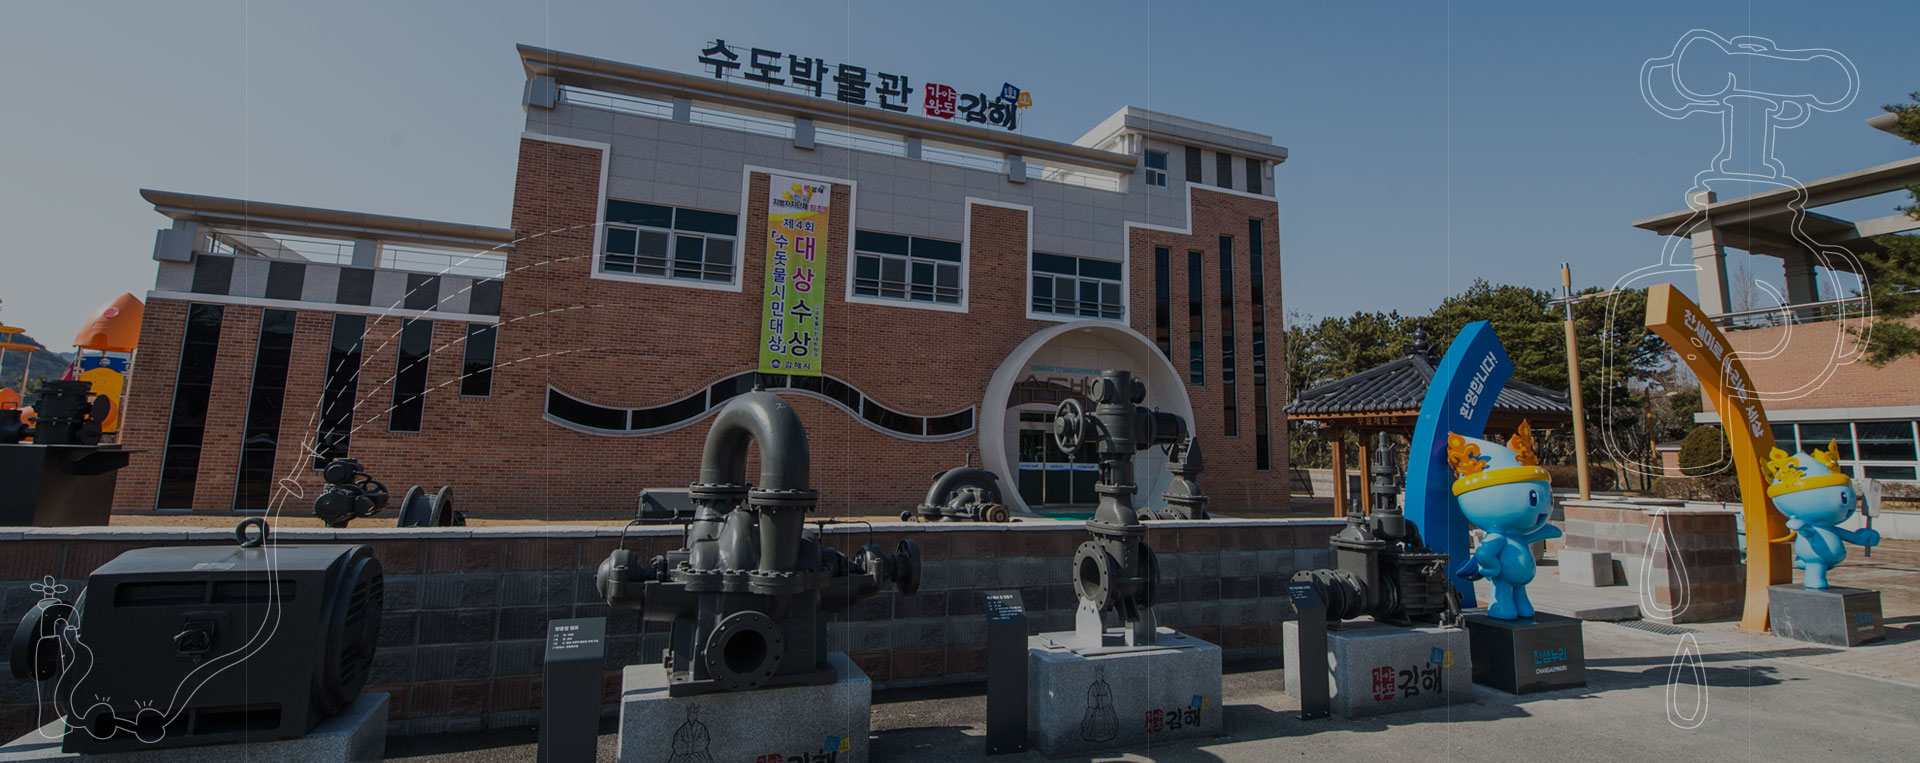 생명의 근원인 깨끗한 물을 공급하는 상수도의 역사를 기록하는 공간, 김해시 수도박물관